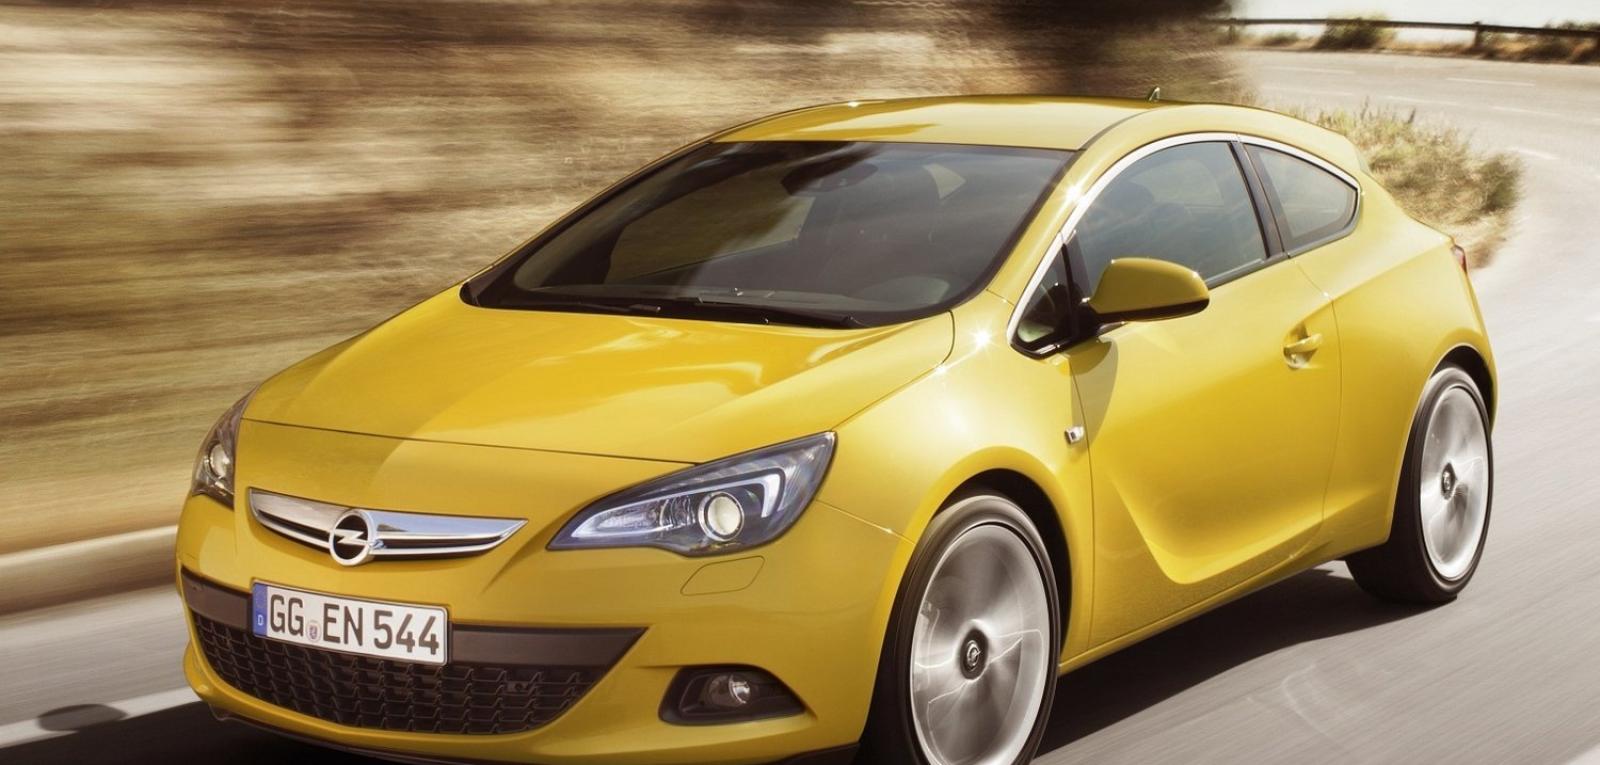 Как устранить скрип в районе ветрового стекла Opel Astra J GTC?